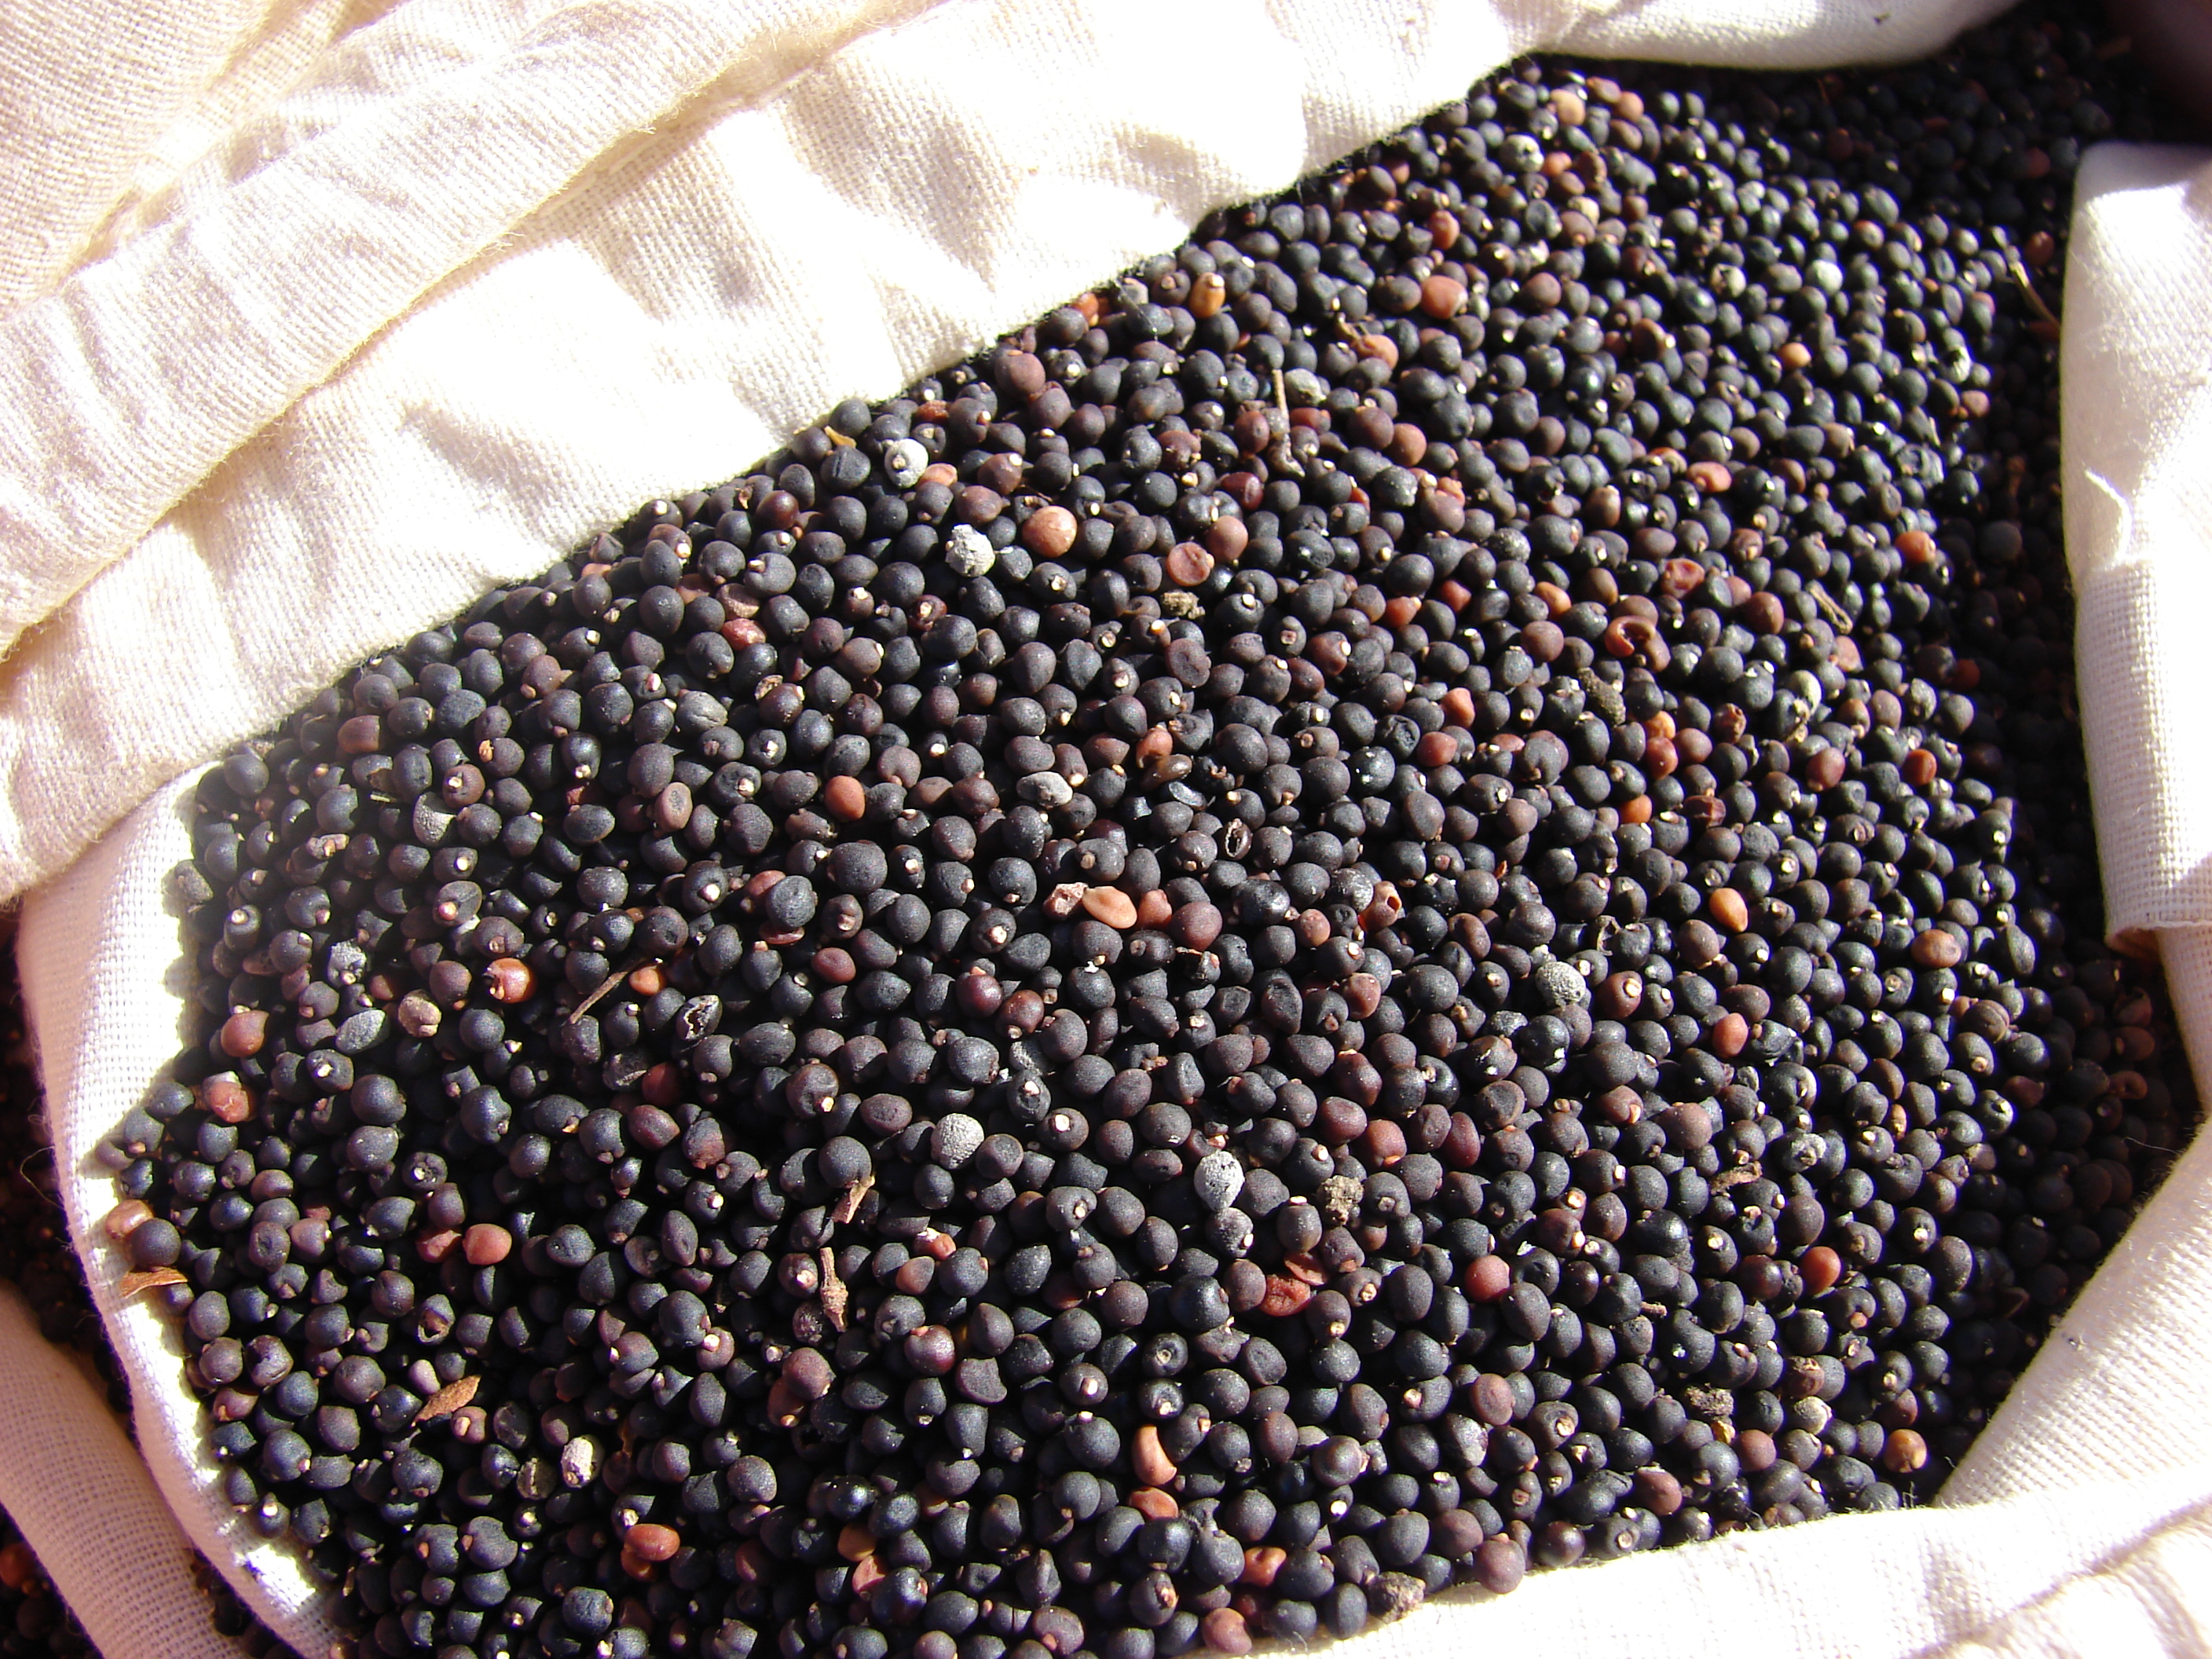 Starr-080210-2751-Dodonaea viscosa-bag of seeds-Rd to Kuheia-Kahoolawe (24276254104)